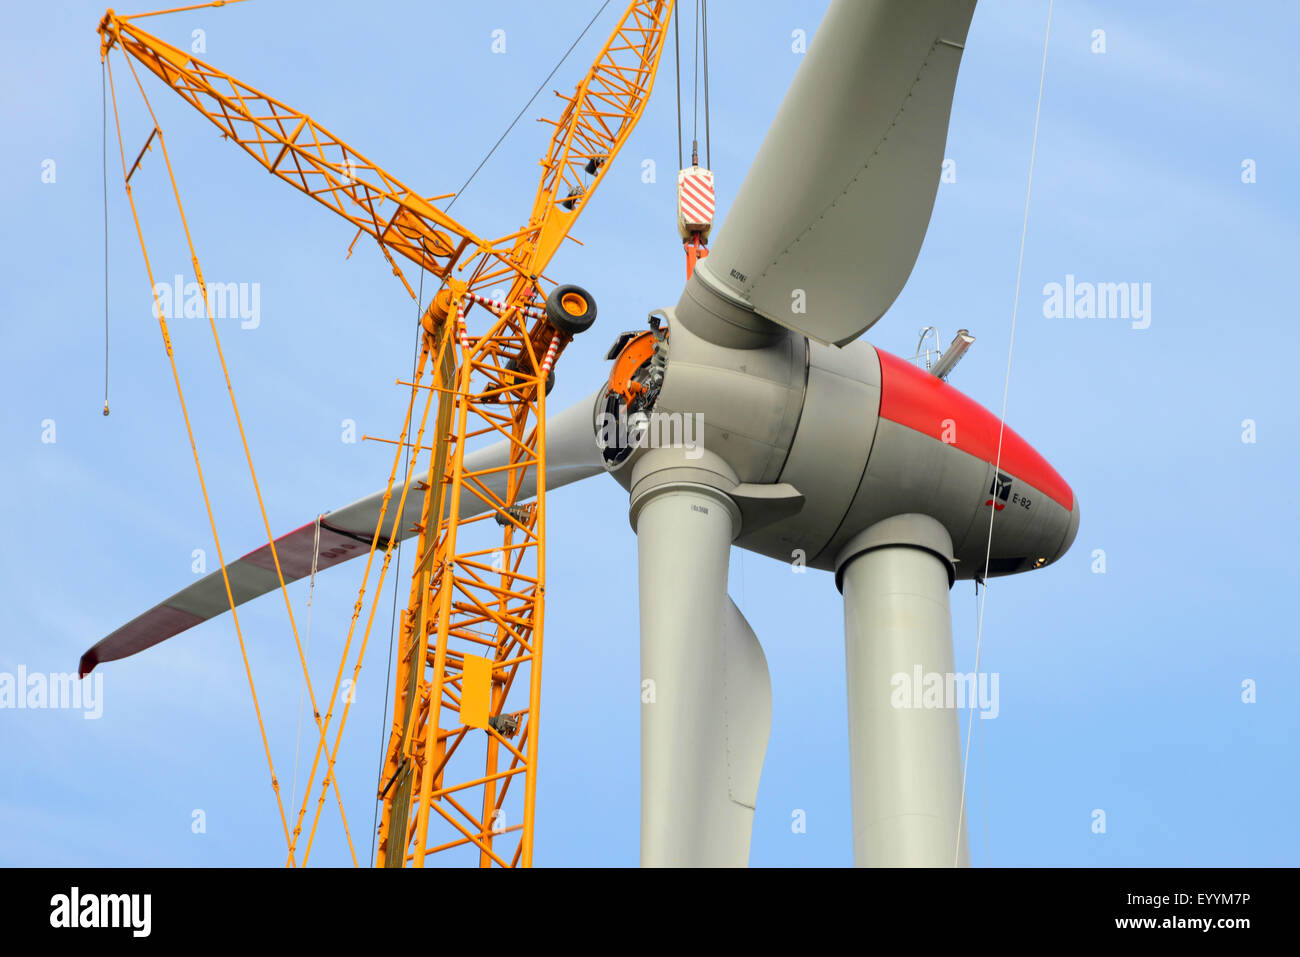 heavy-duty crane and power wheel, maintenance, Germany, Bavaria Stock Photo